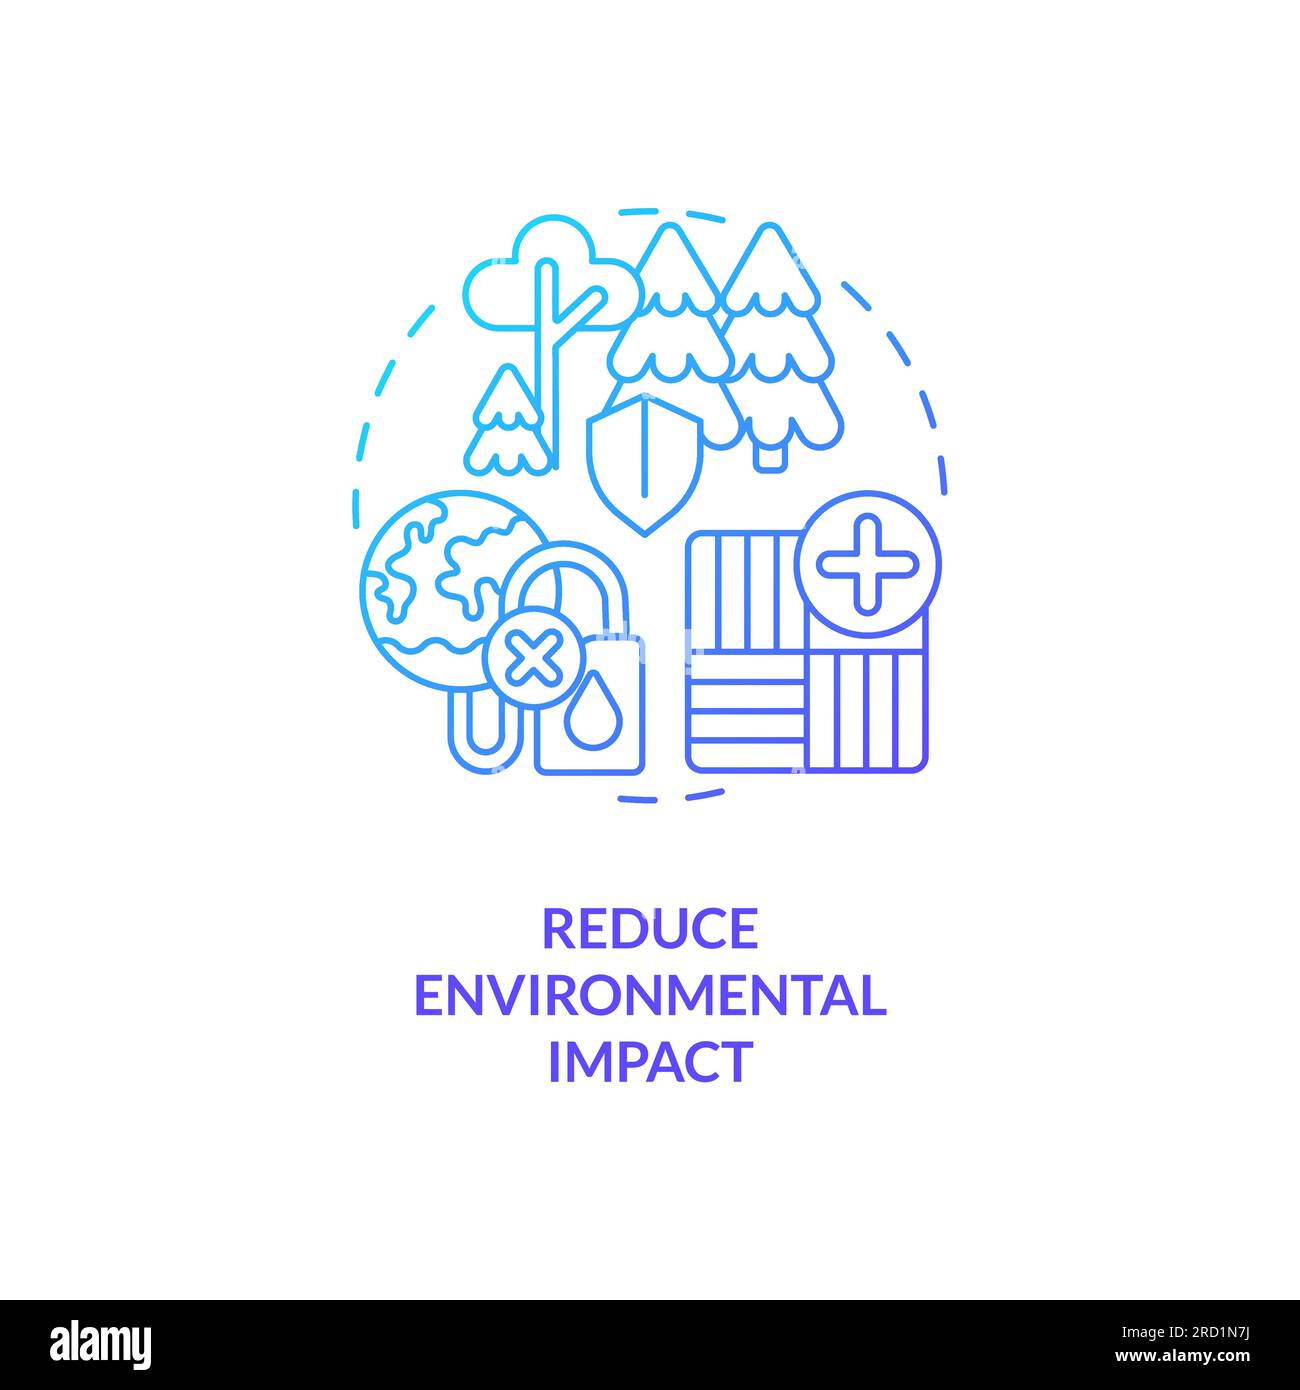 Linea sottile per ridurre l'impatto ambientale Illustrazione Vettoriale